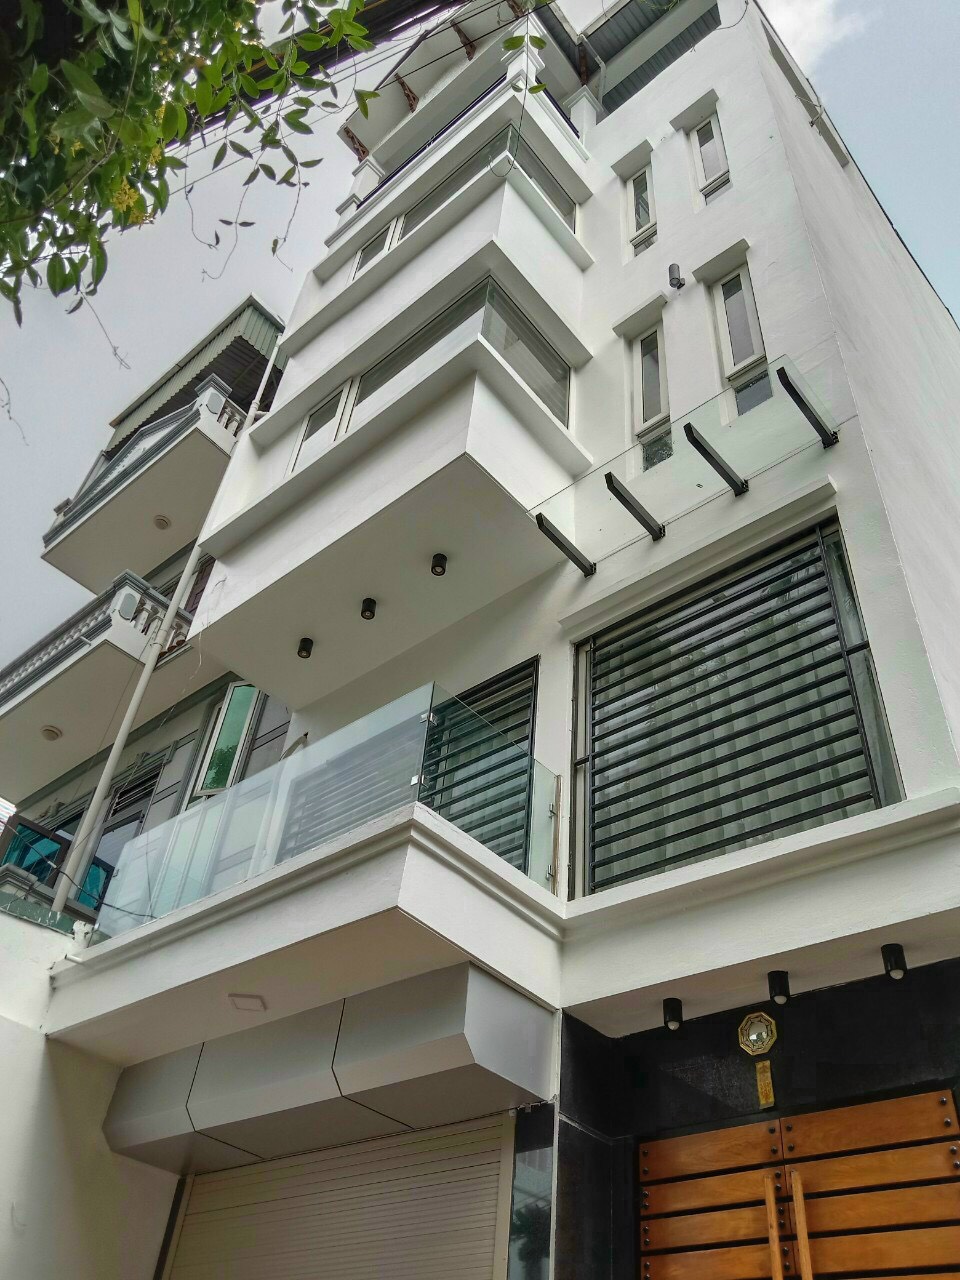 Giá nhà đất tại Hà Nội cũng tăng mạnh trong những năm gần đây nâng mức giá phổ biến từ 1,8 tỷ đồng trở lên với những căn 4 tầng có diện tích từ 30 đến 35m2/sàn